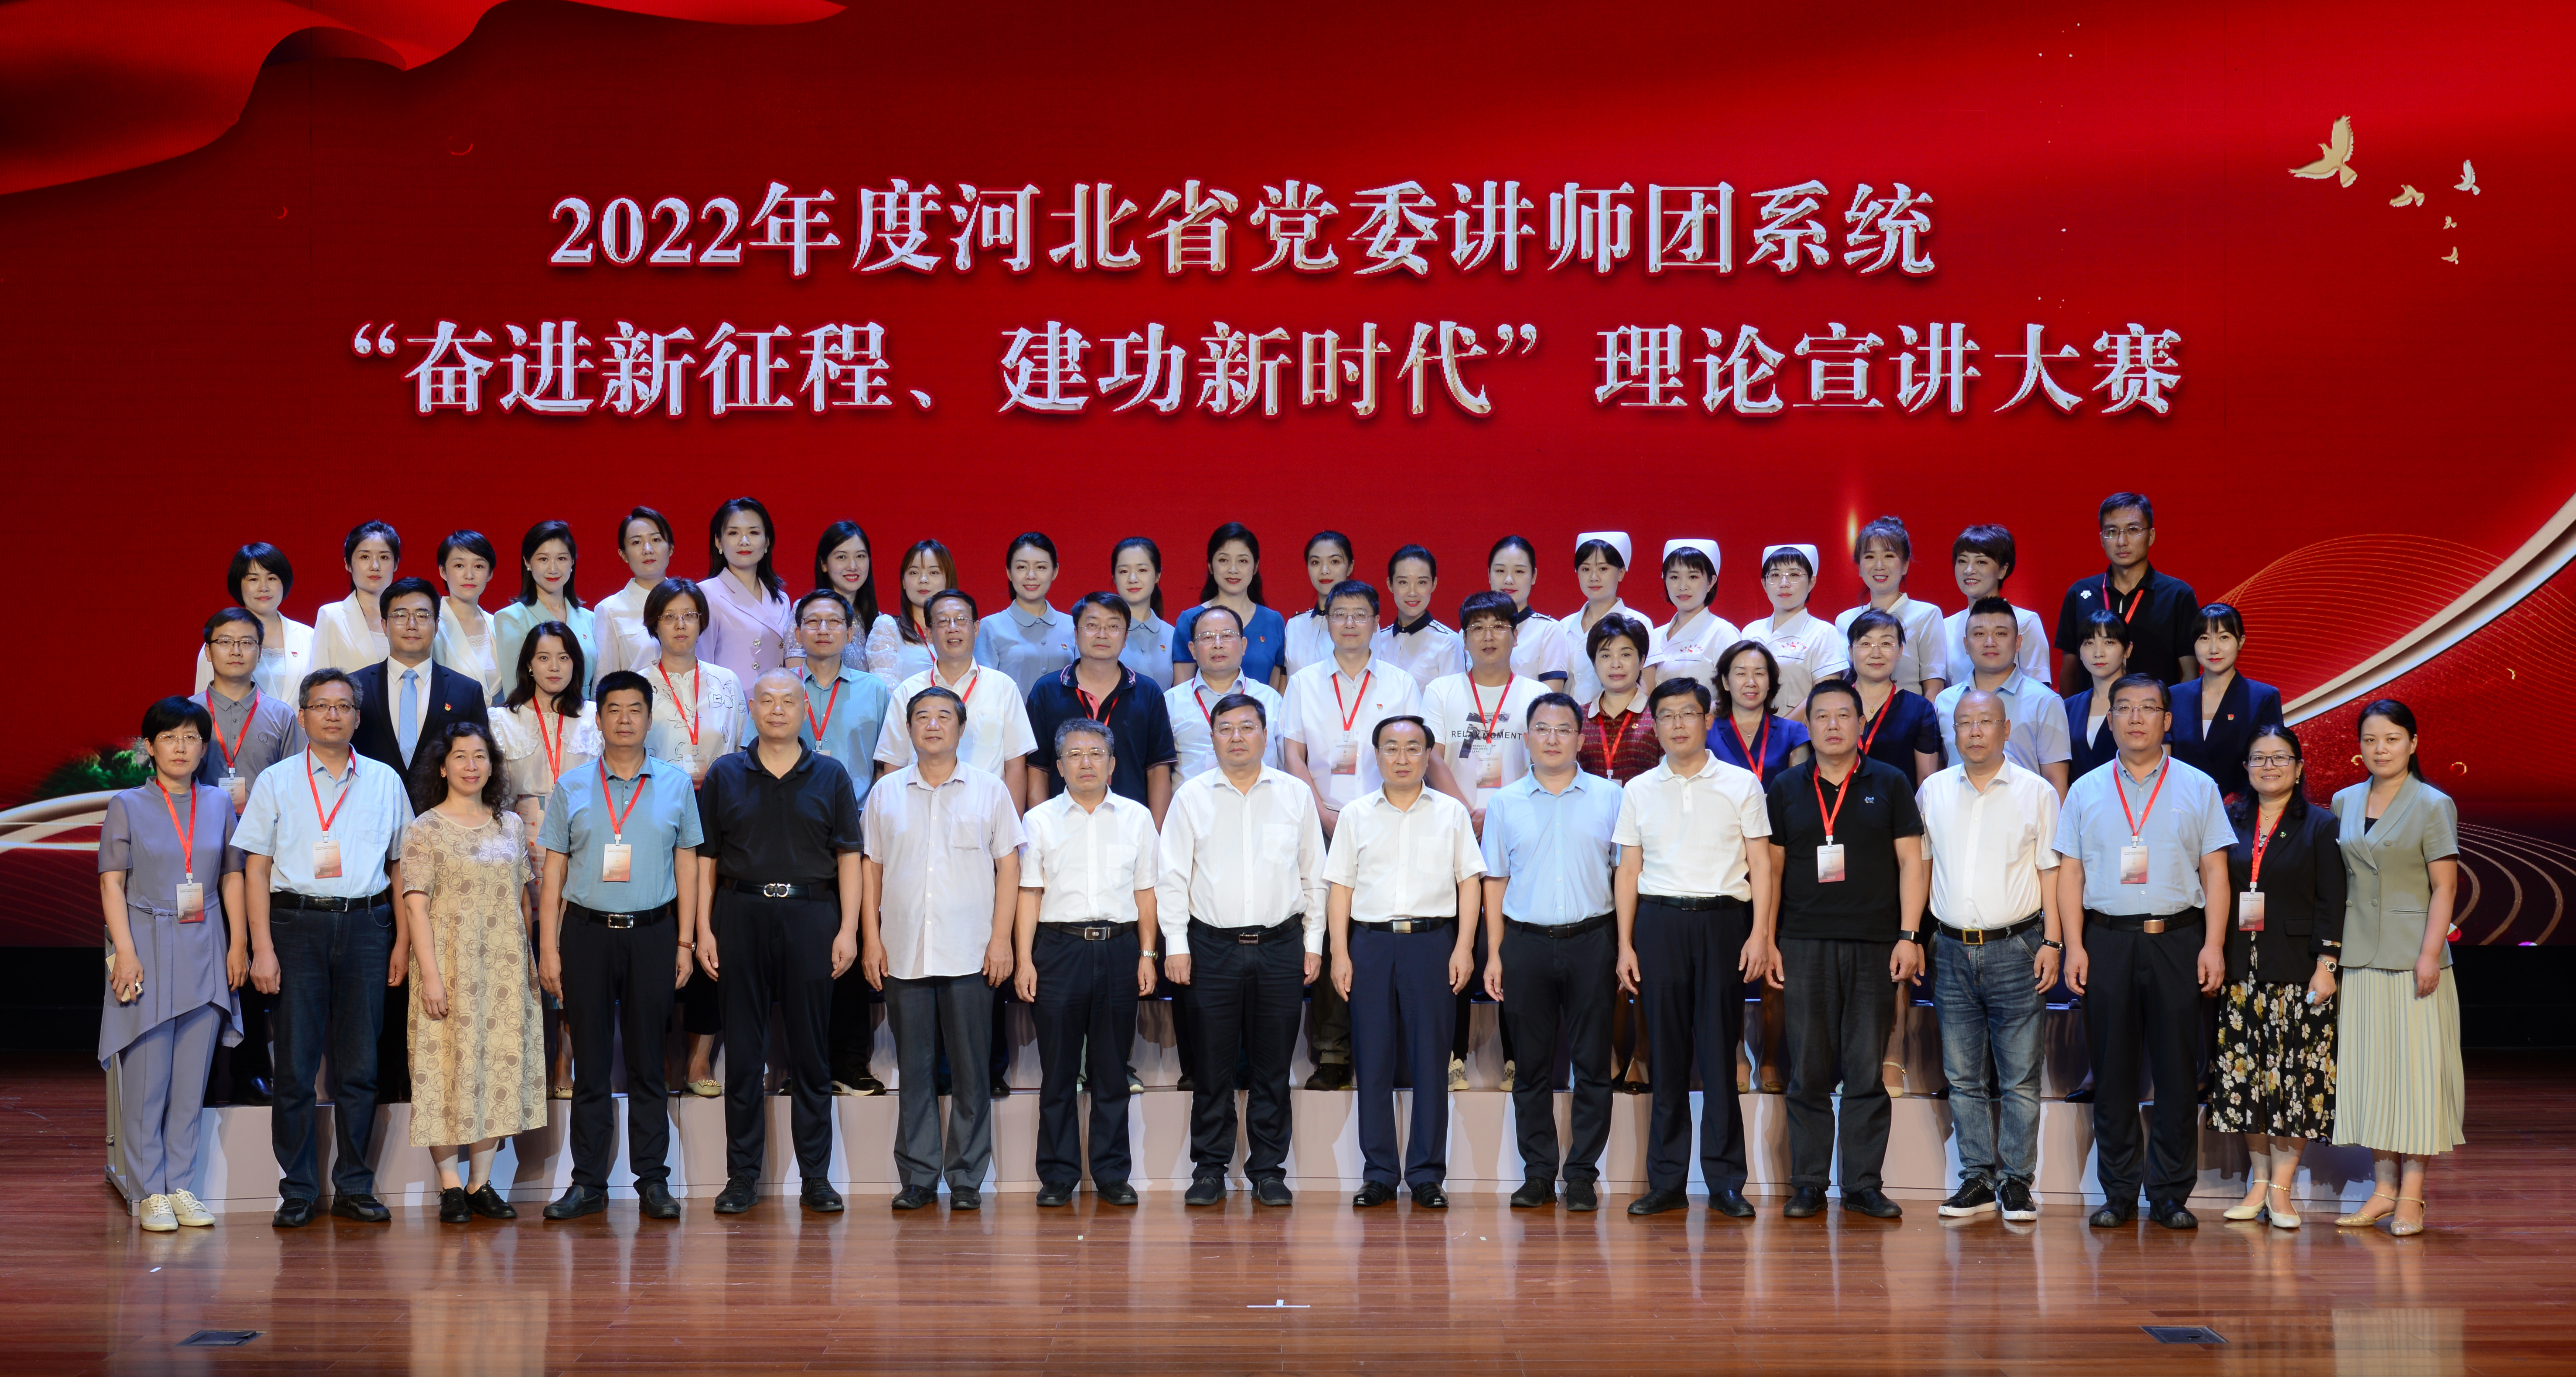 河北省党委讲师团系统理论宣讲大赛决赛在邯郸举行